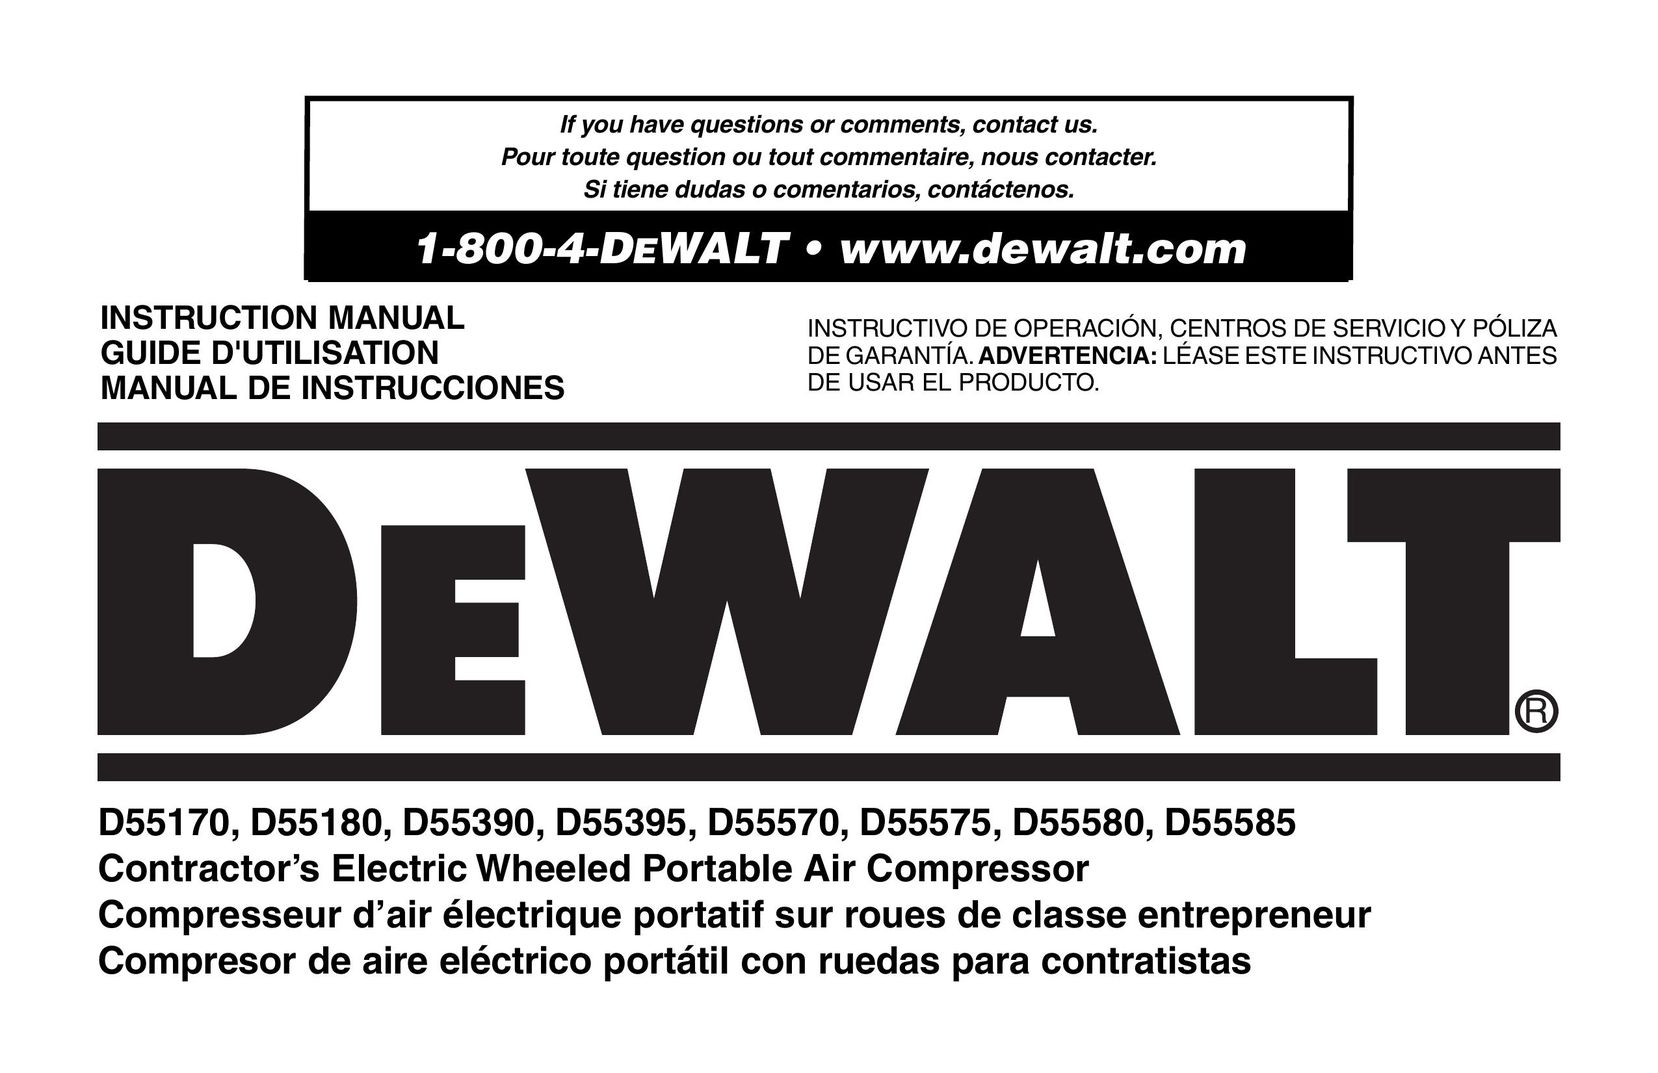 DeWalt D55570 Air Compressor User Manual